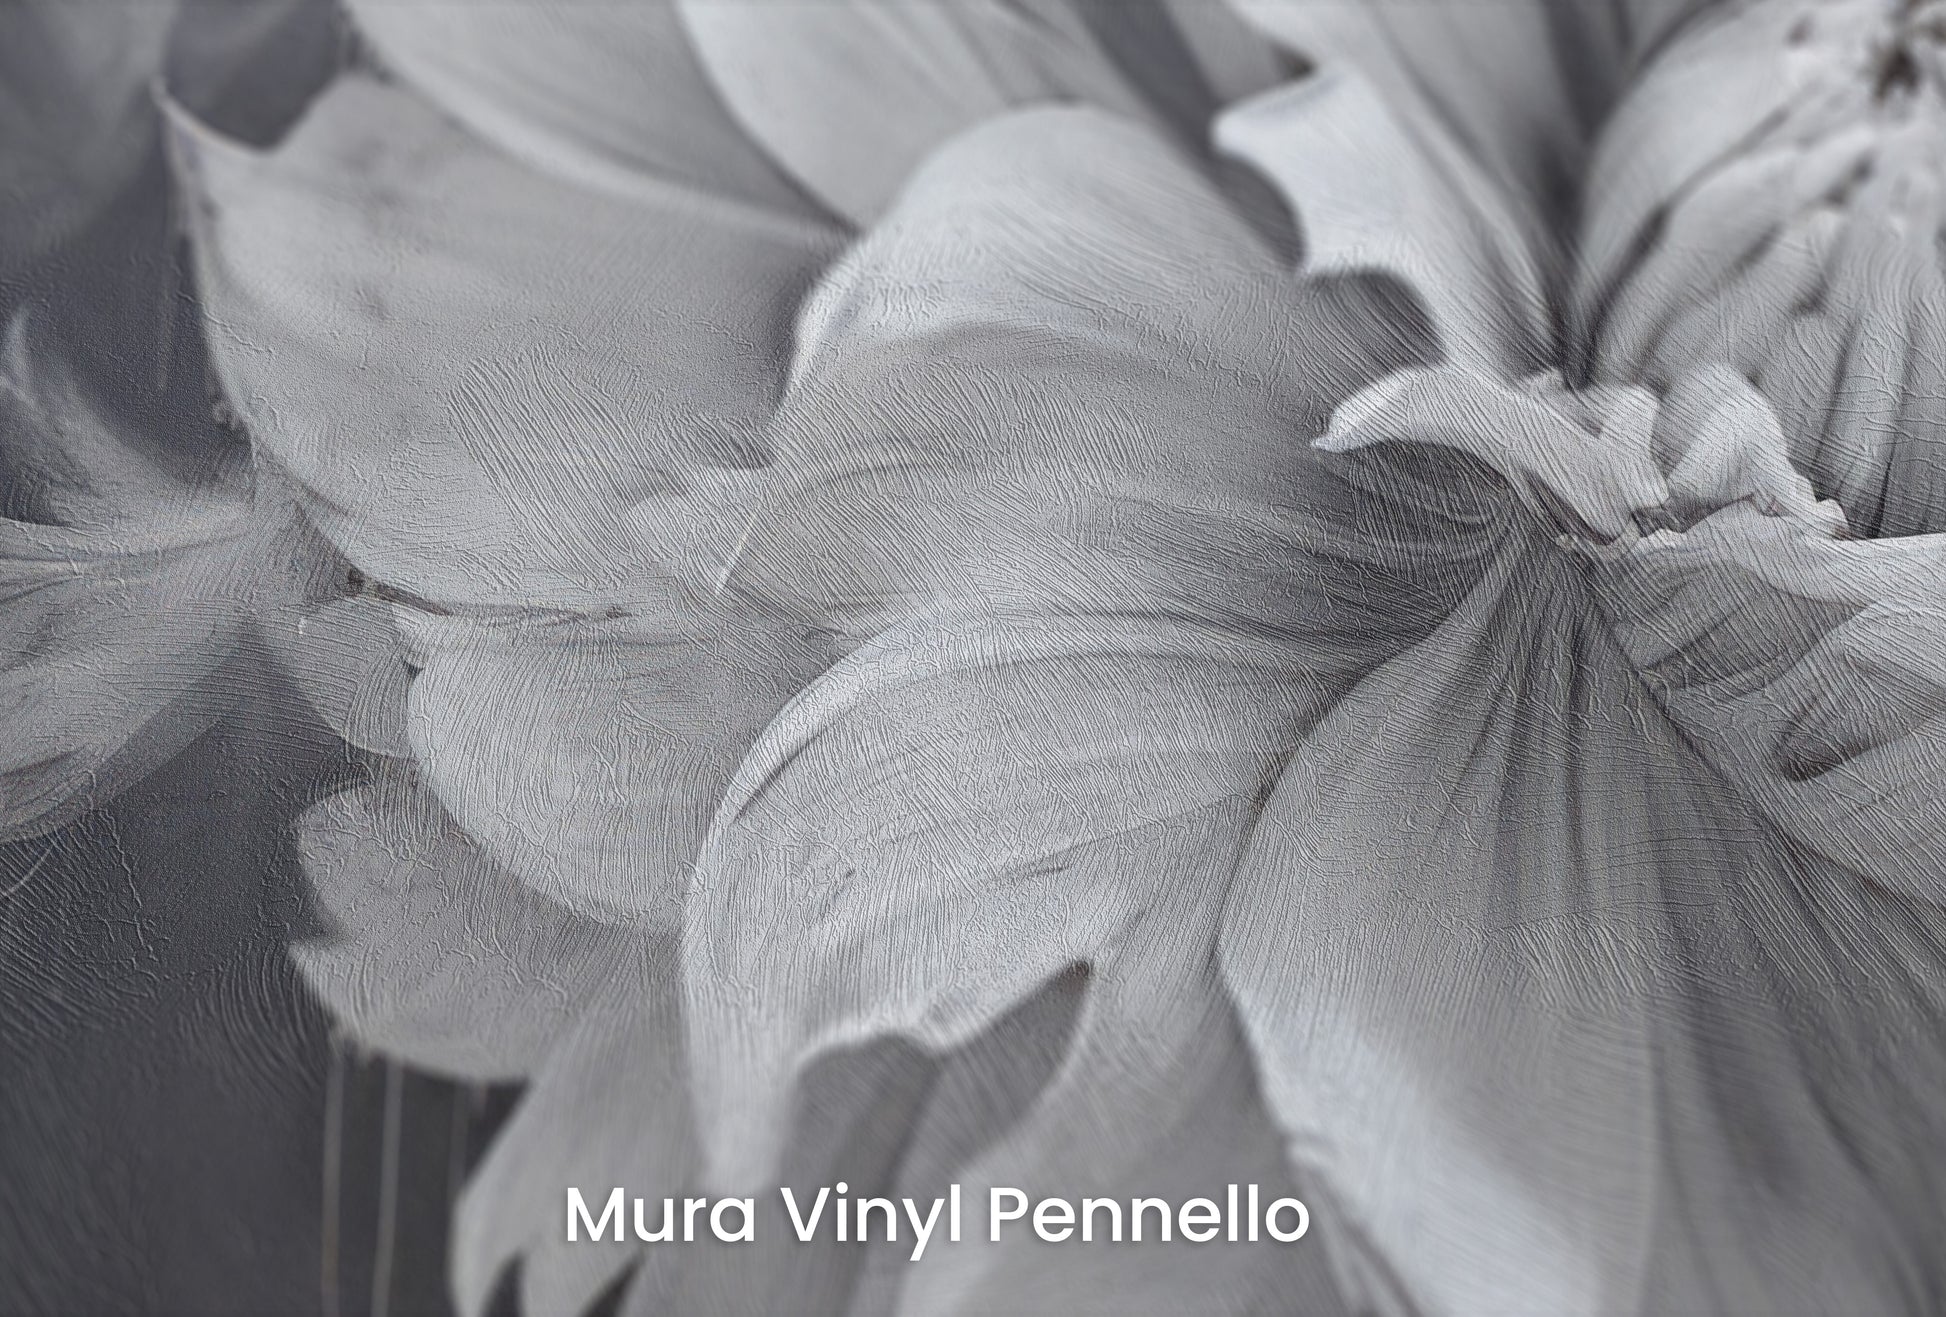 Zbliżenie na artystyczną fototapetę o nazwie MIDNIGHT BLOOM DRAMA na podłożu Mura Vinyl Pennello - faktura pociągnięć pędzla malarskiego.